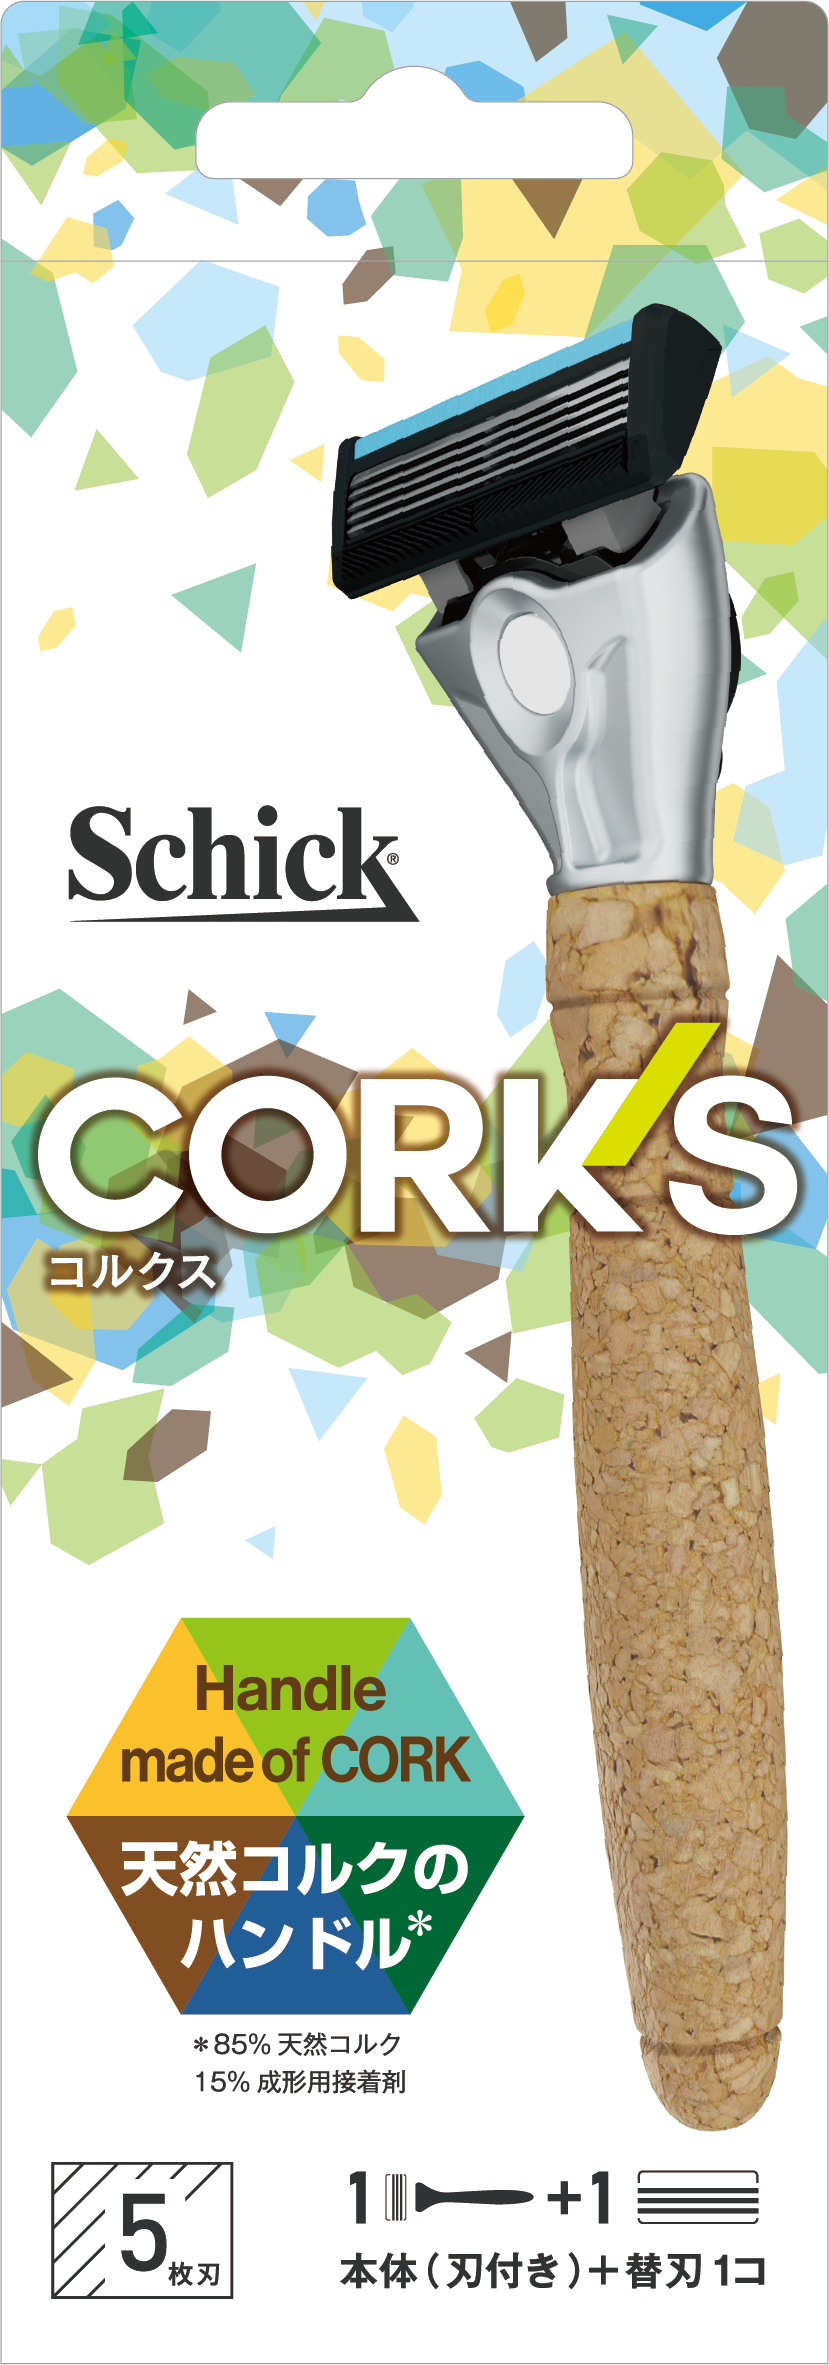 Schick から環境に優しい、サスティナブルなカミソリ発売！再生可能な天然コルク 85%をハンドル部に使用したカミソリ「コルクスホルダー」2021 年 9 月 19 日（日）日本上陸！のサブ画像4